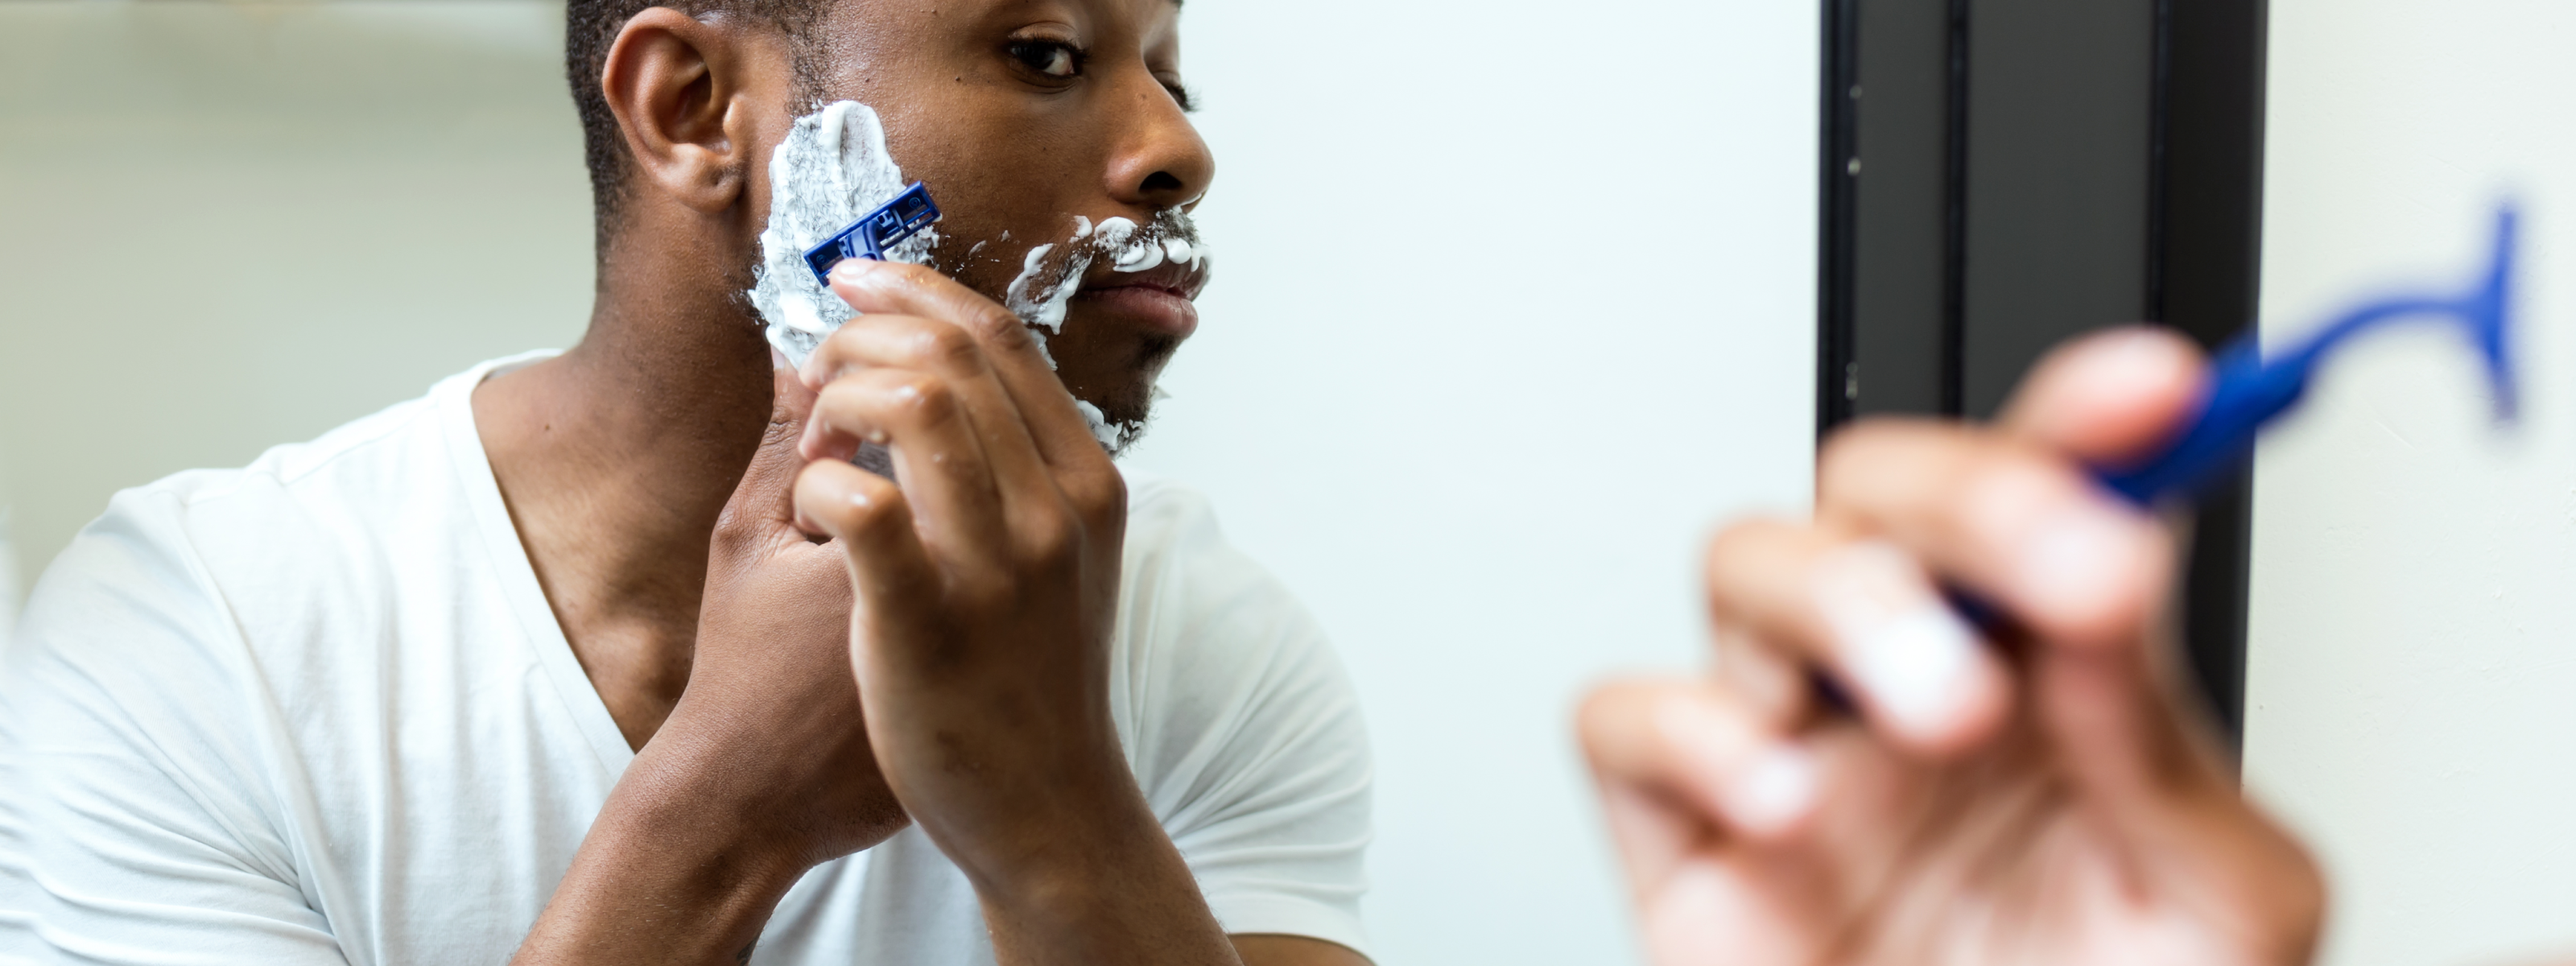 Man shaving in mirror